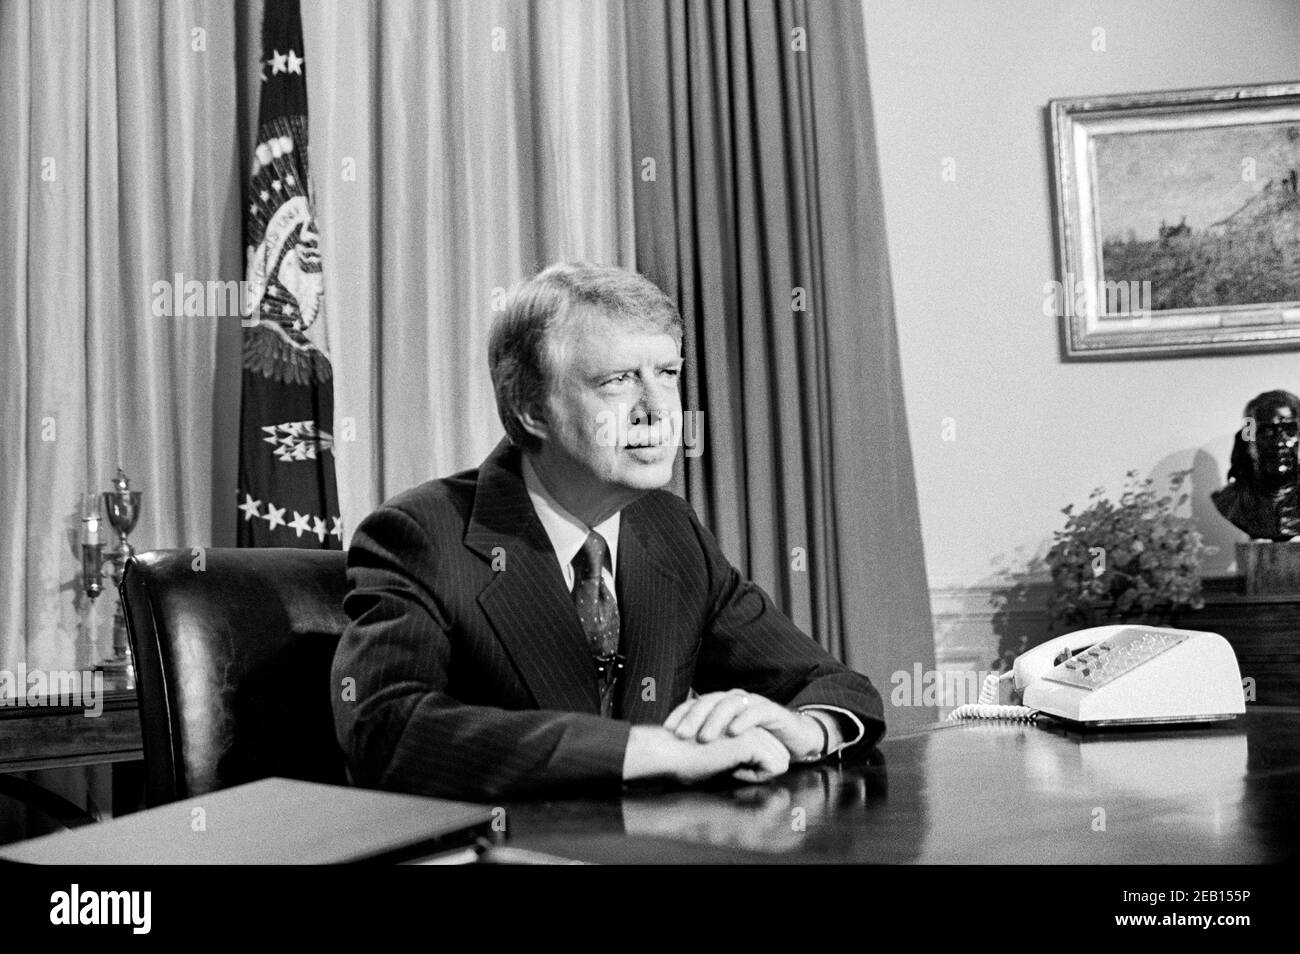 Le président américain Jimmy carter dans Oval Office lors du discours à la télévision, White House, Washington, D.C., États-Unis, Warren K. Leffler, 18 avril 1977 Banque D'Images